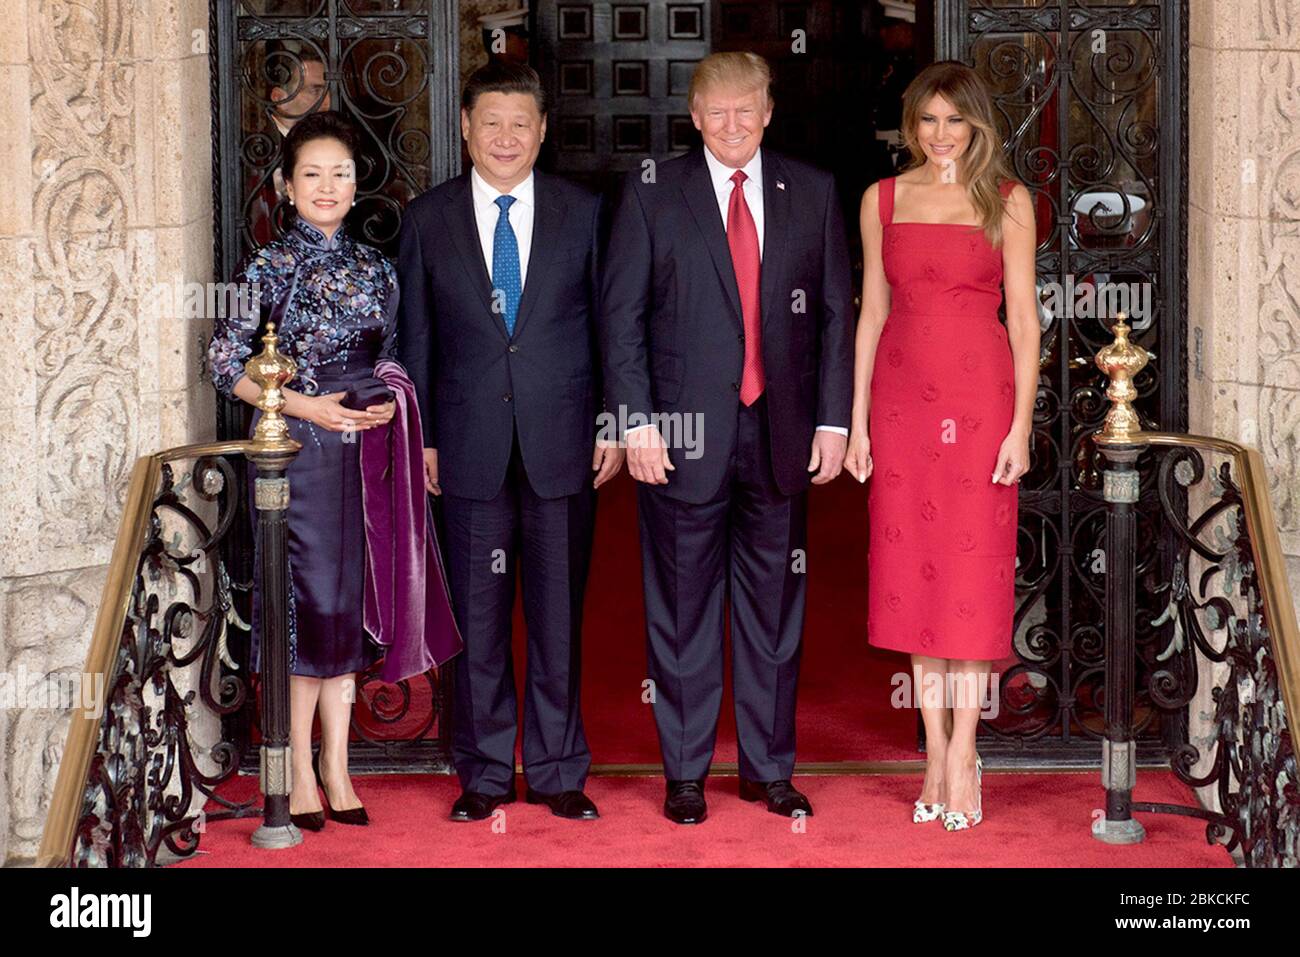 Il Presidente Donald Trump e la prima Signora Melania Trump posano per una foto con il Presidente cinese Xi Jingping e sua moglie, la signora Peng Liyuan, giovedì 6 aprile 2017, all'ingresso di Mar-a-Lago a Palm Beach, FL (Foto bianca ufficiale di D. Myles Cullen) visite leader stranieri Foto Stock